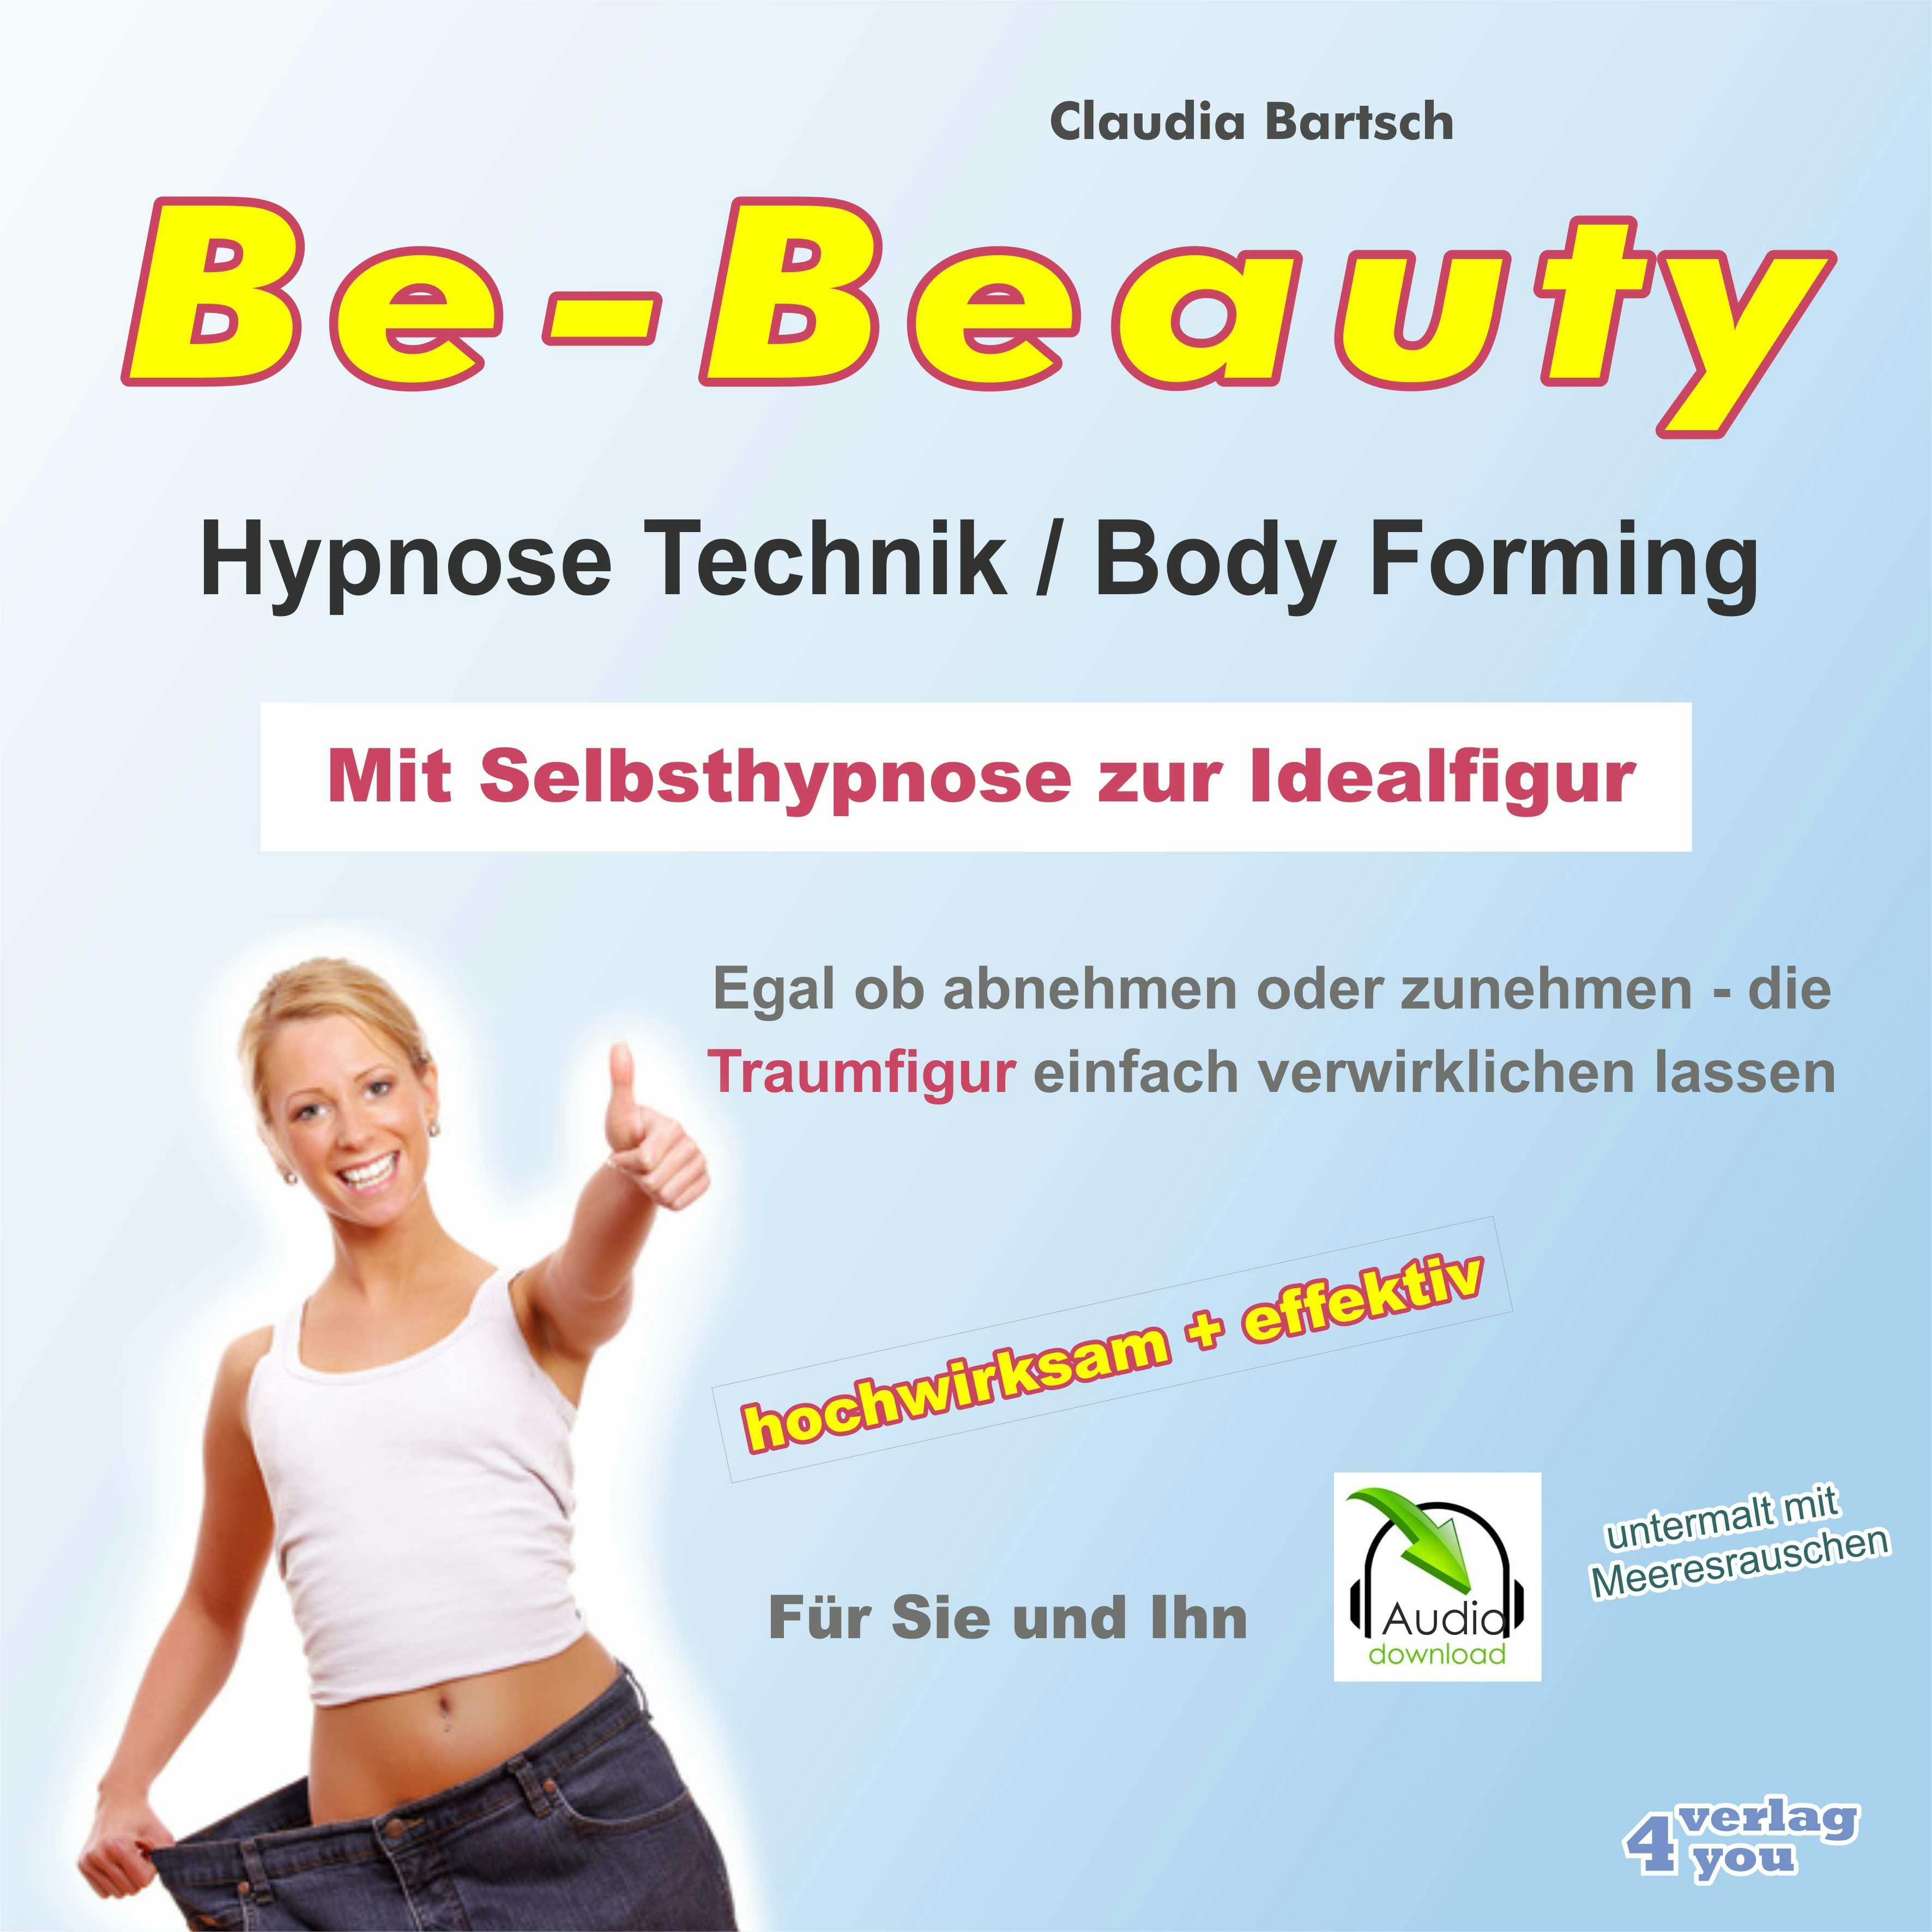 Be-Beauty HypnoseTechnik / Body Forming - Mit Selbsthypnose zur Idealfigur: Egal ob abnehmen oder zunehmen - die Traumfigur einfach verwirklichen lassen - Claudia Bartsch